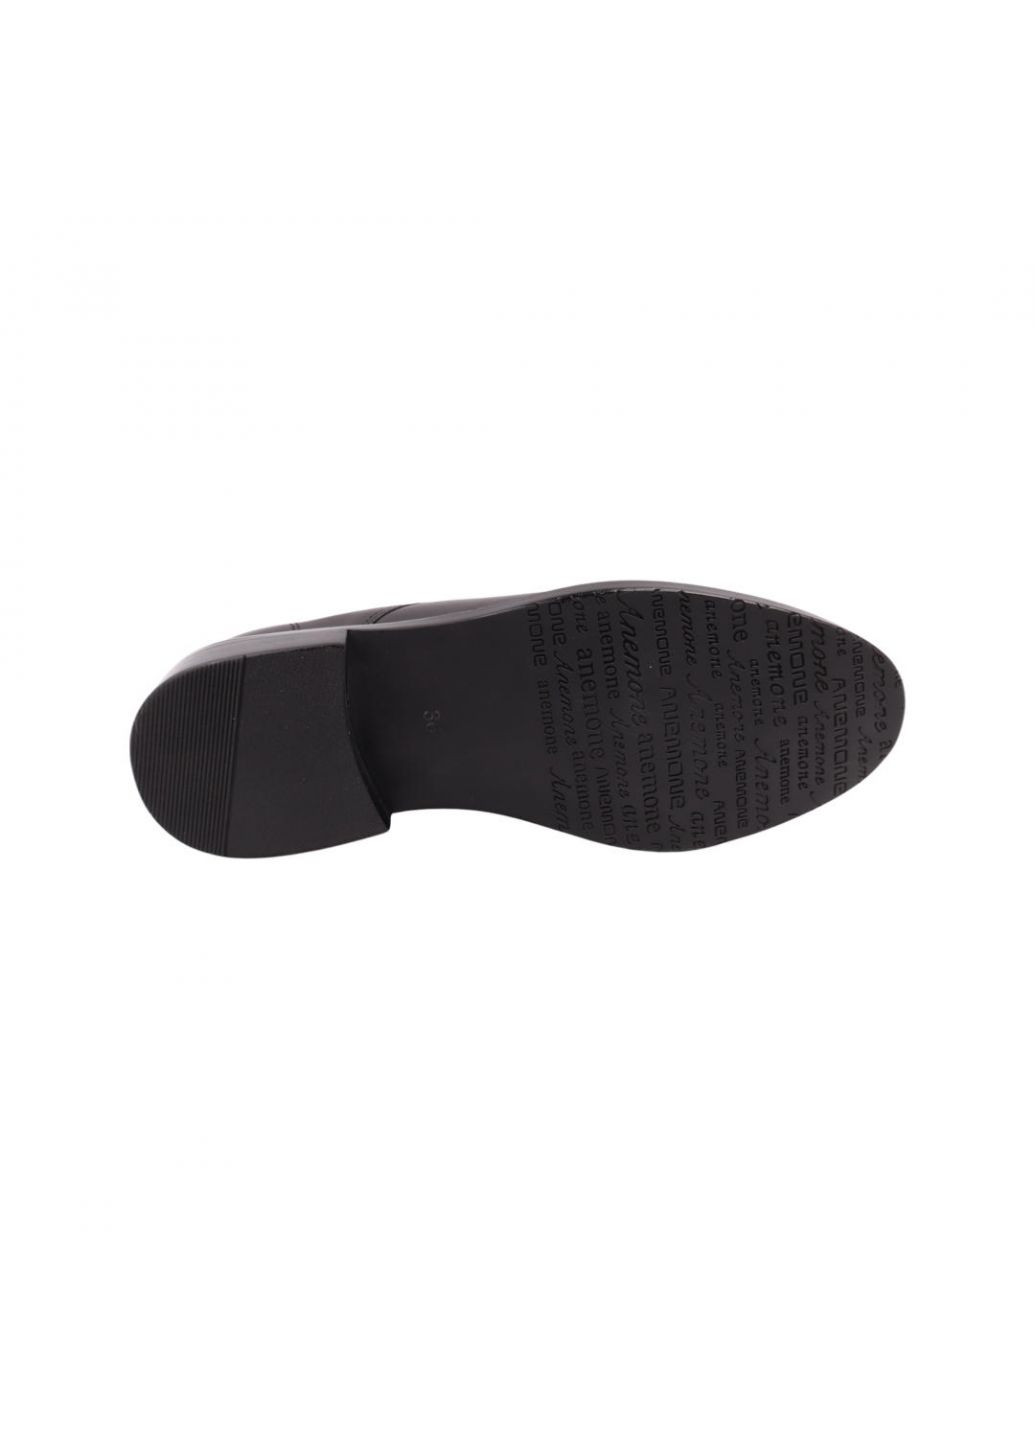 Туфлі жіночі чорні натуральна шкіра Anemone 227-22dtc (257439507)